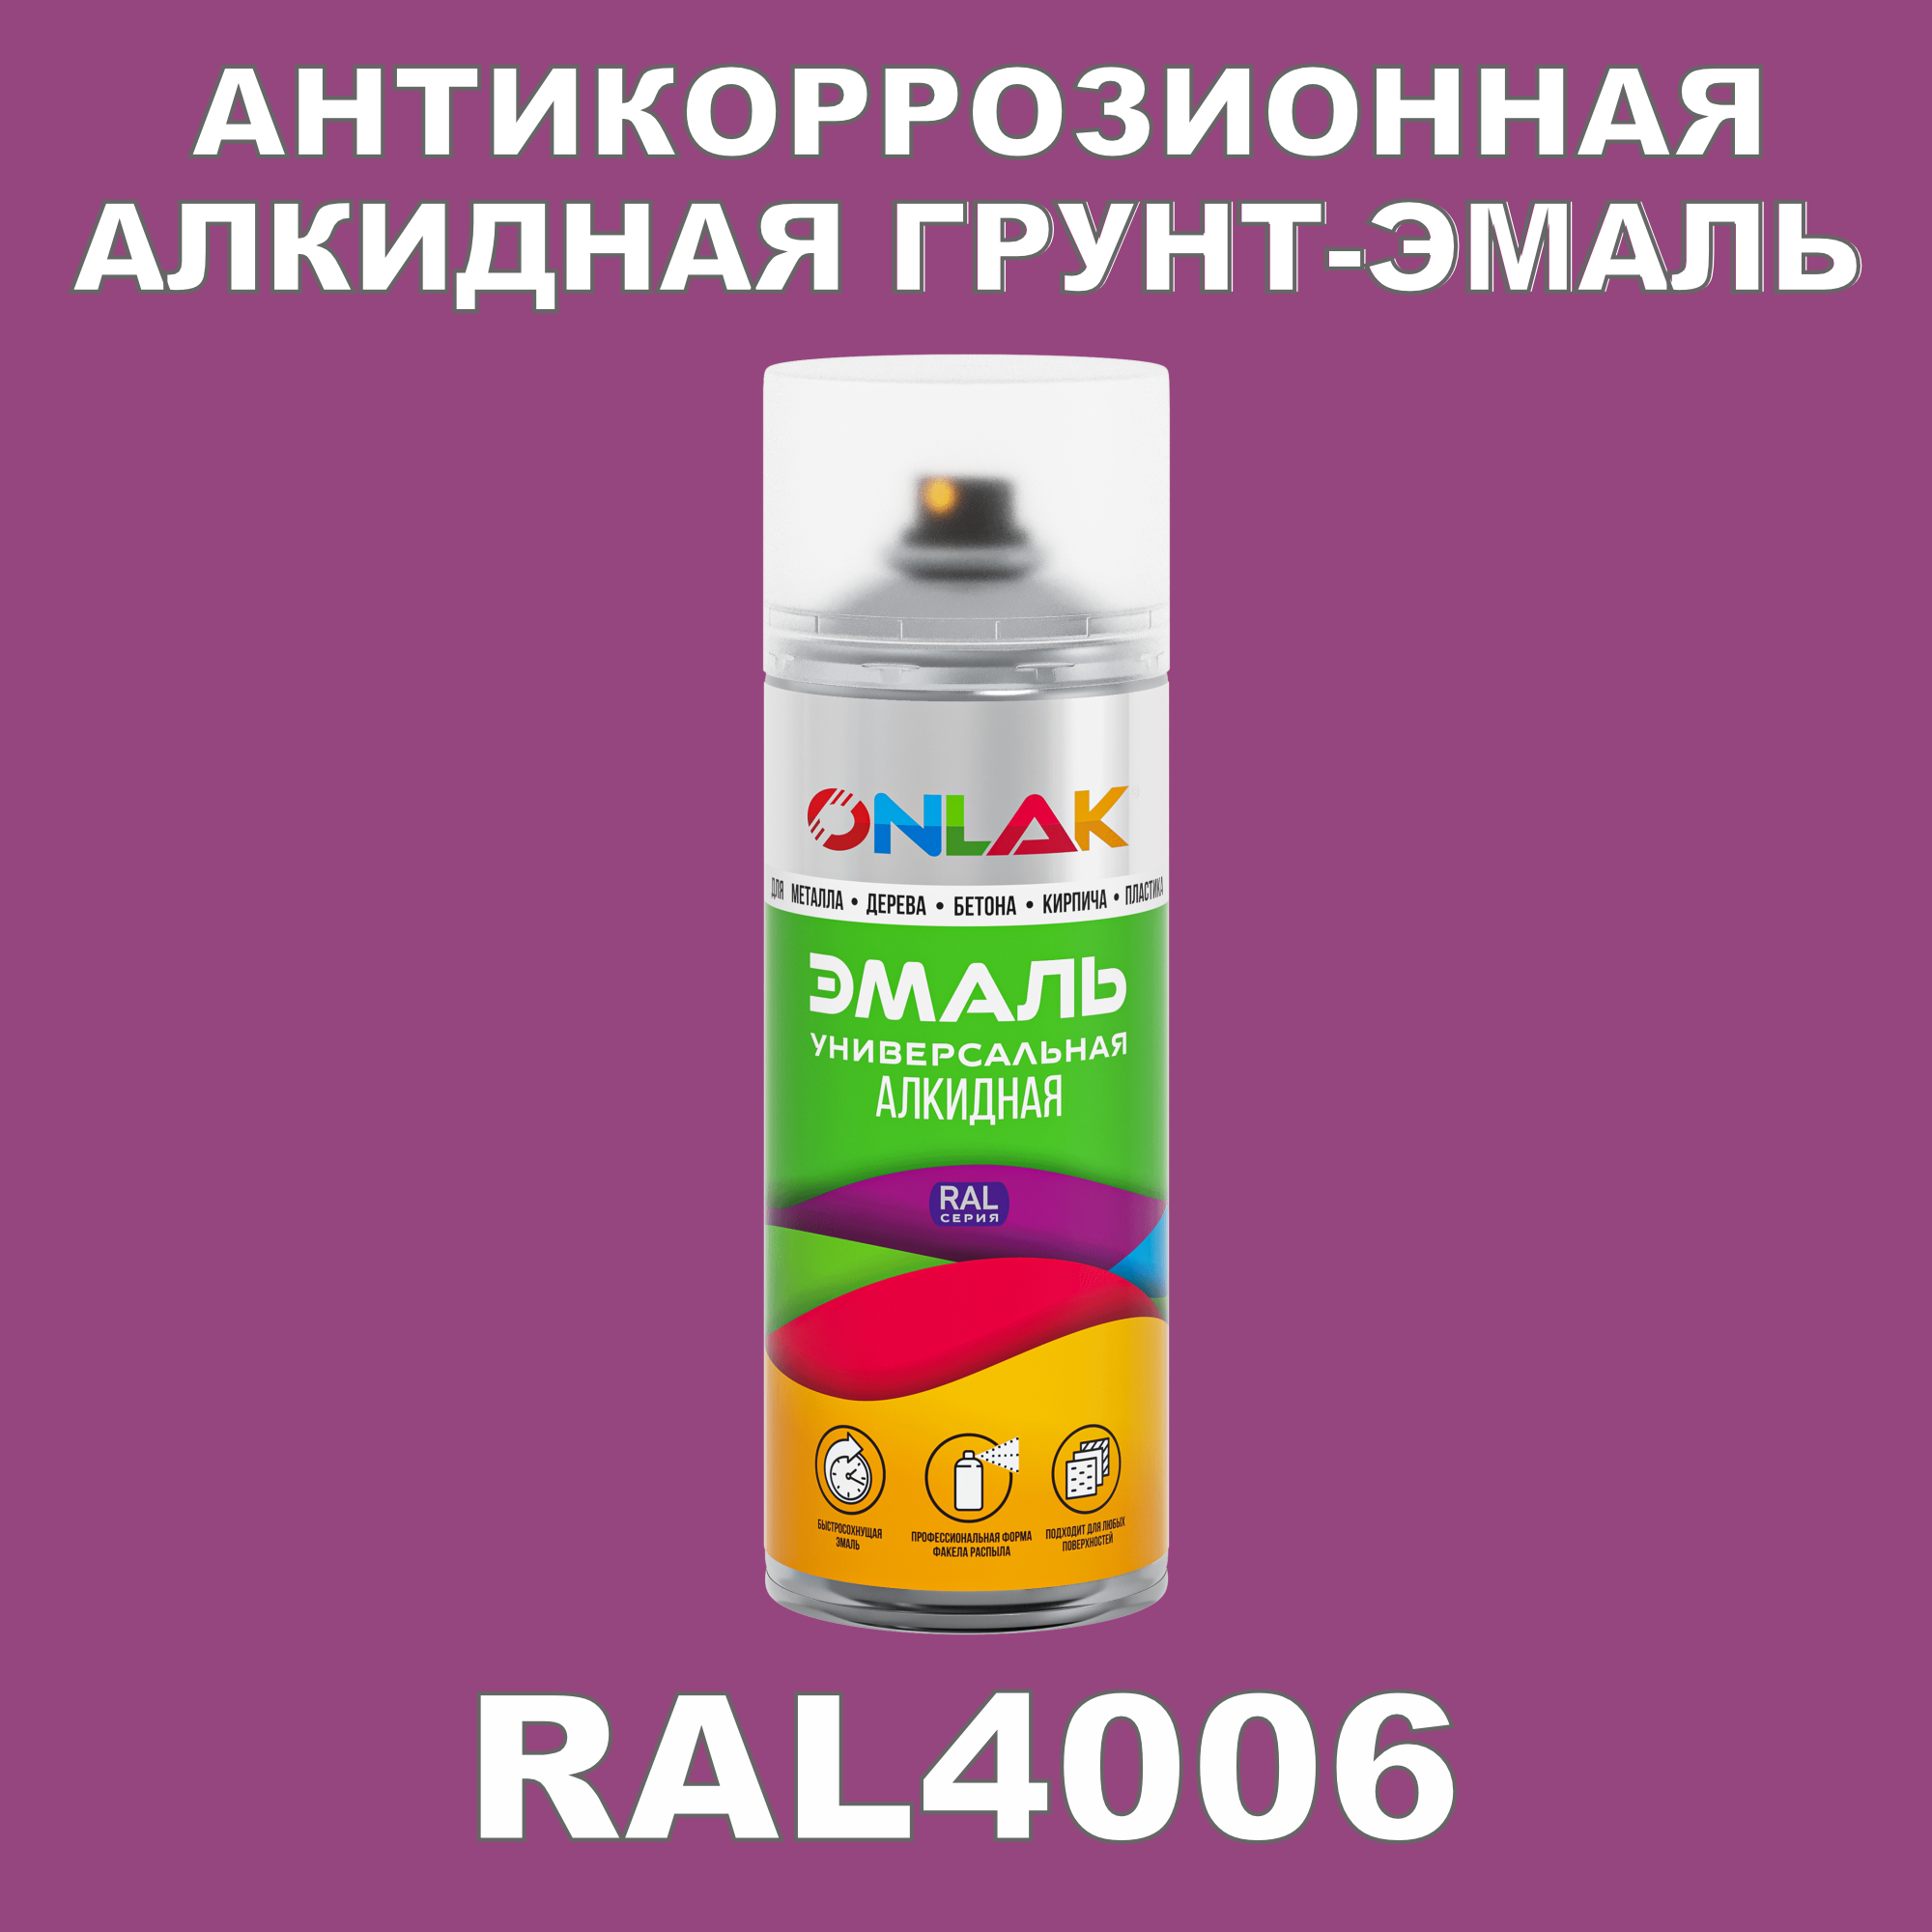 Антикоррозионная грунт-эмаль ONLAK RAL 4006,фиолетовый,682 мл artuniq color violet цветной грунт для аквариума фиолетовый 1 кг